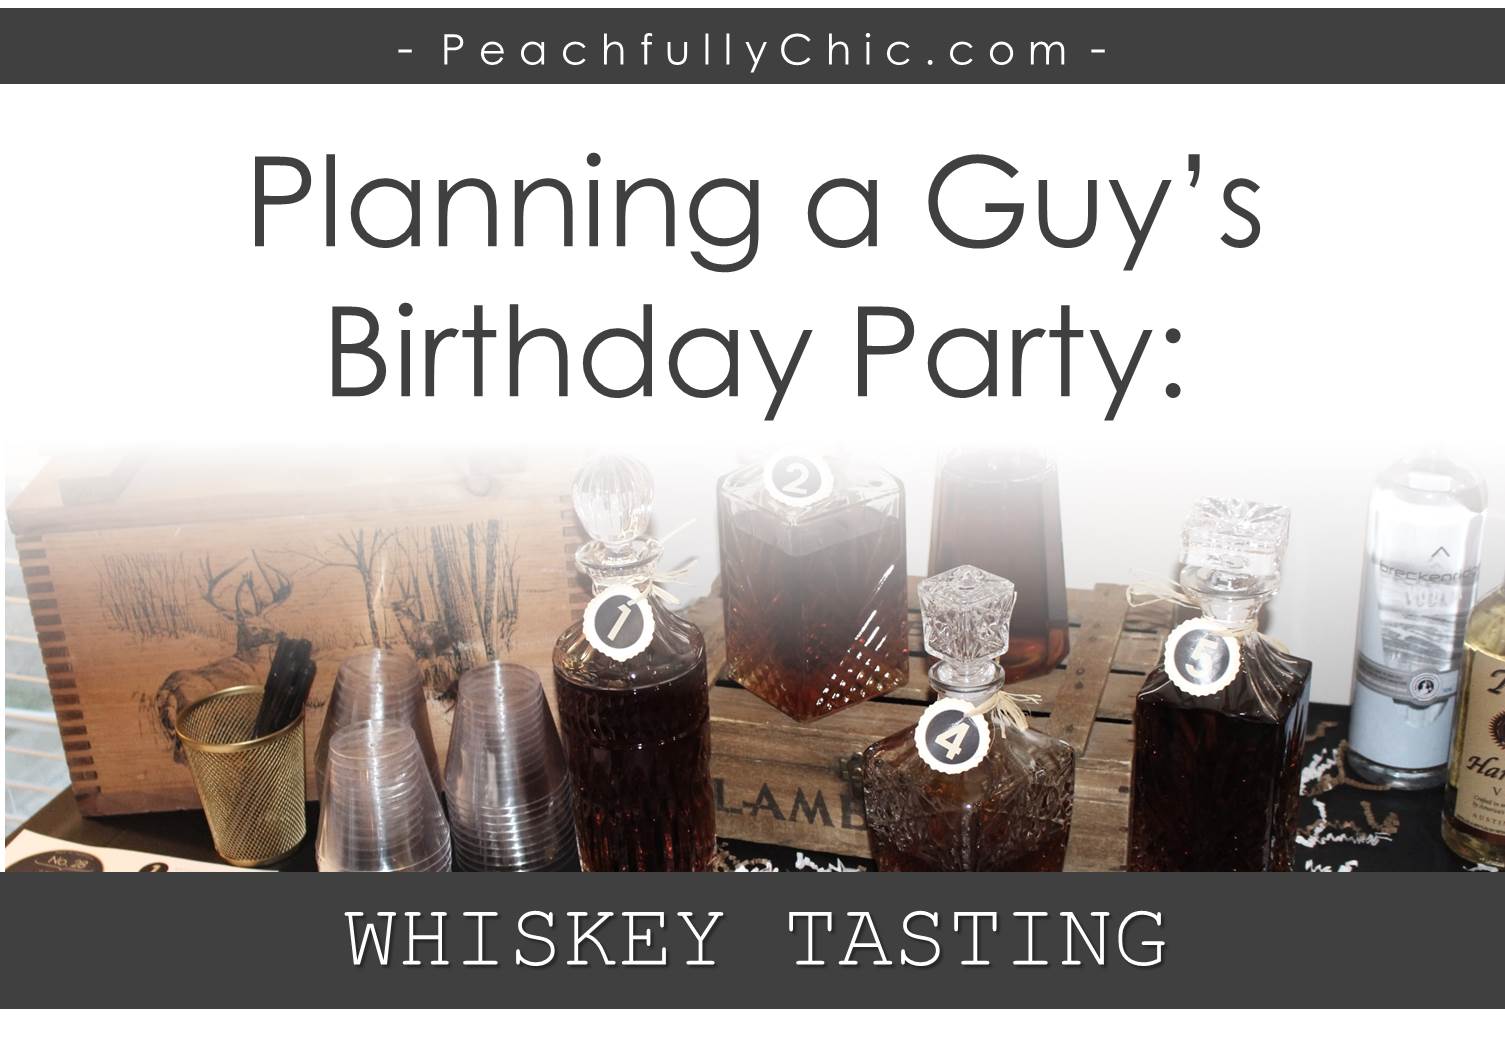 guys-birthday-party-manly-whiskey-tasting-main-